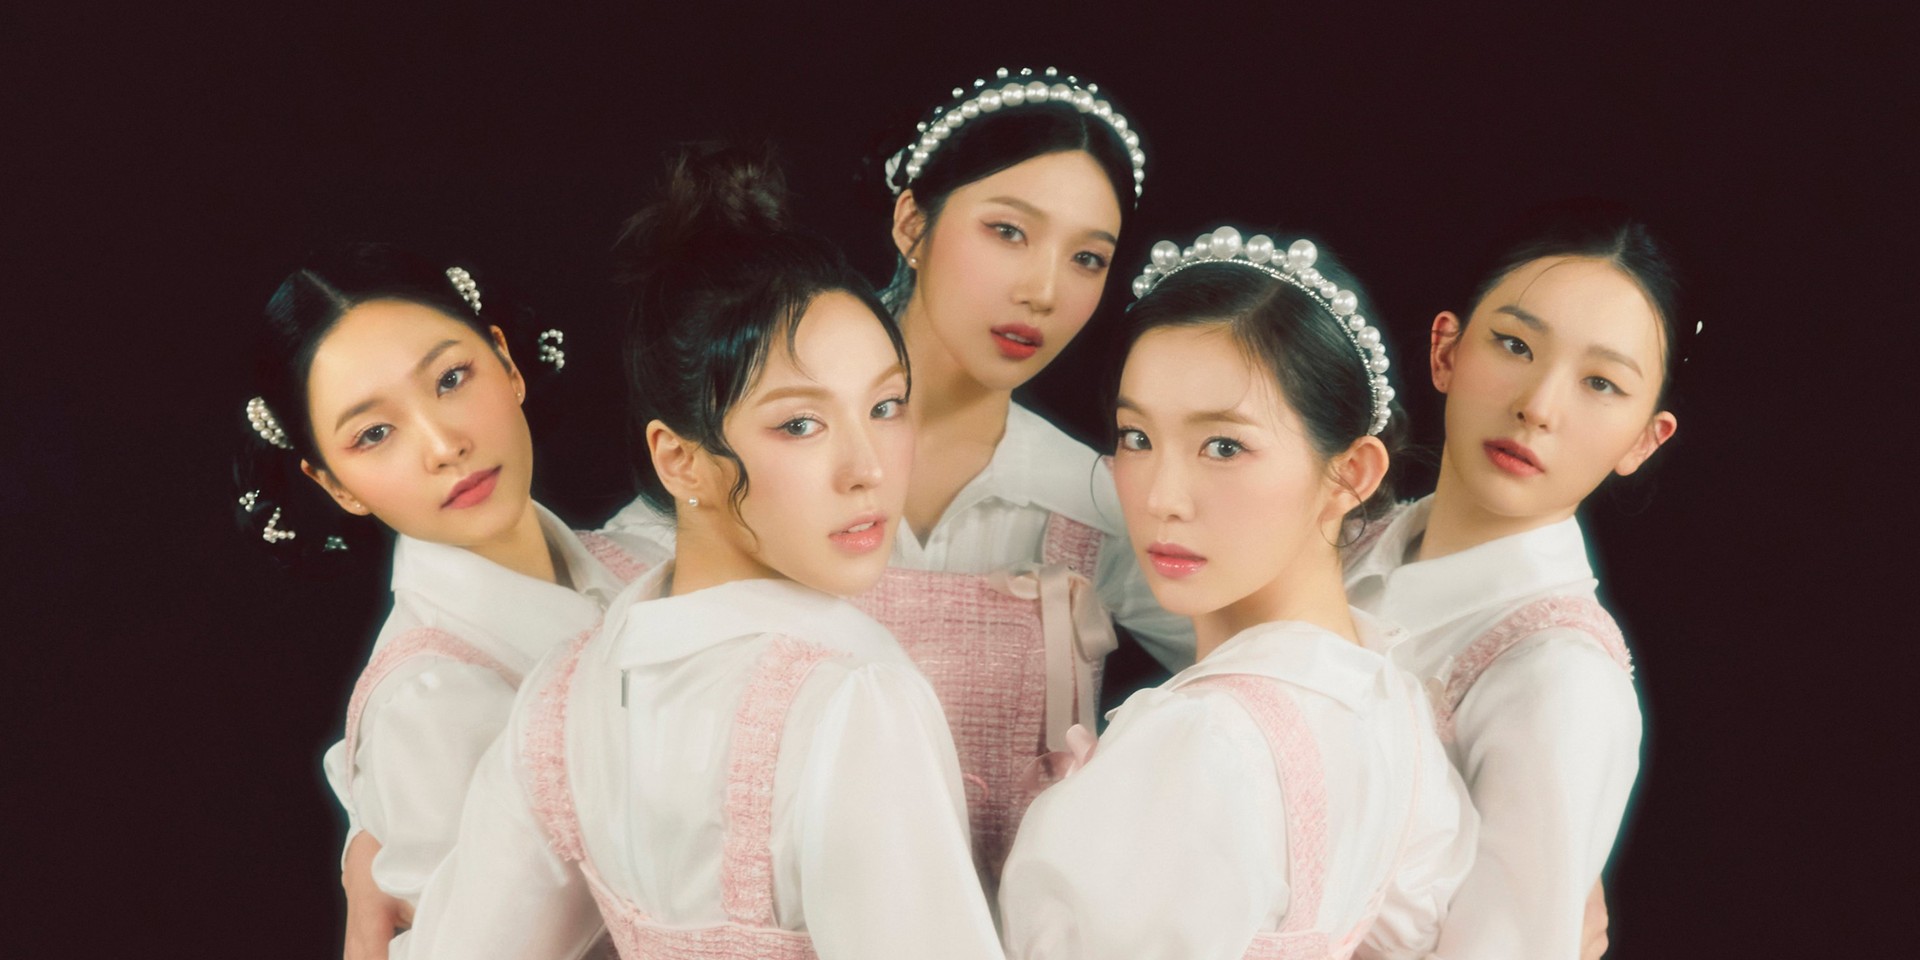 Red Velvet to release new album 'The ReVe Festival 2022 - Feel My